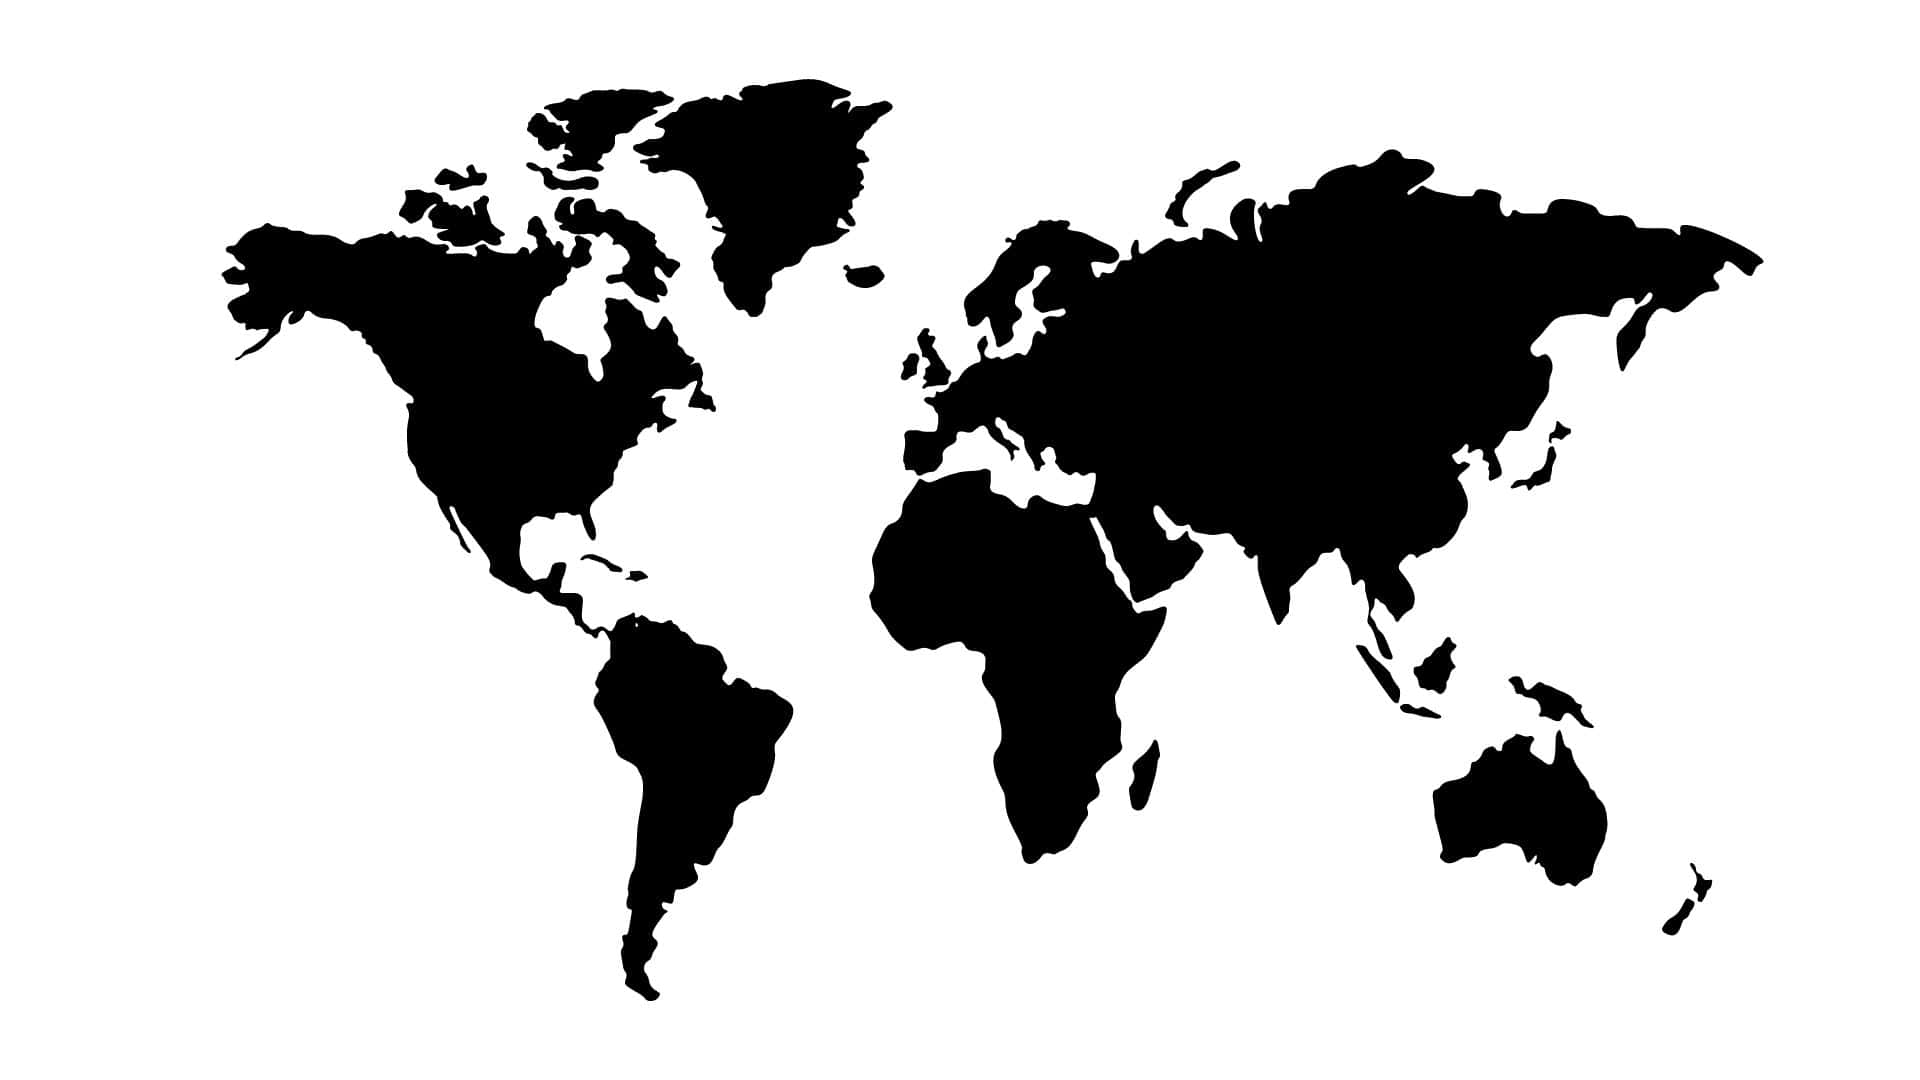 Fondode Mapa Mundial Sencillo En Blanco Y Negro.